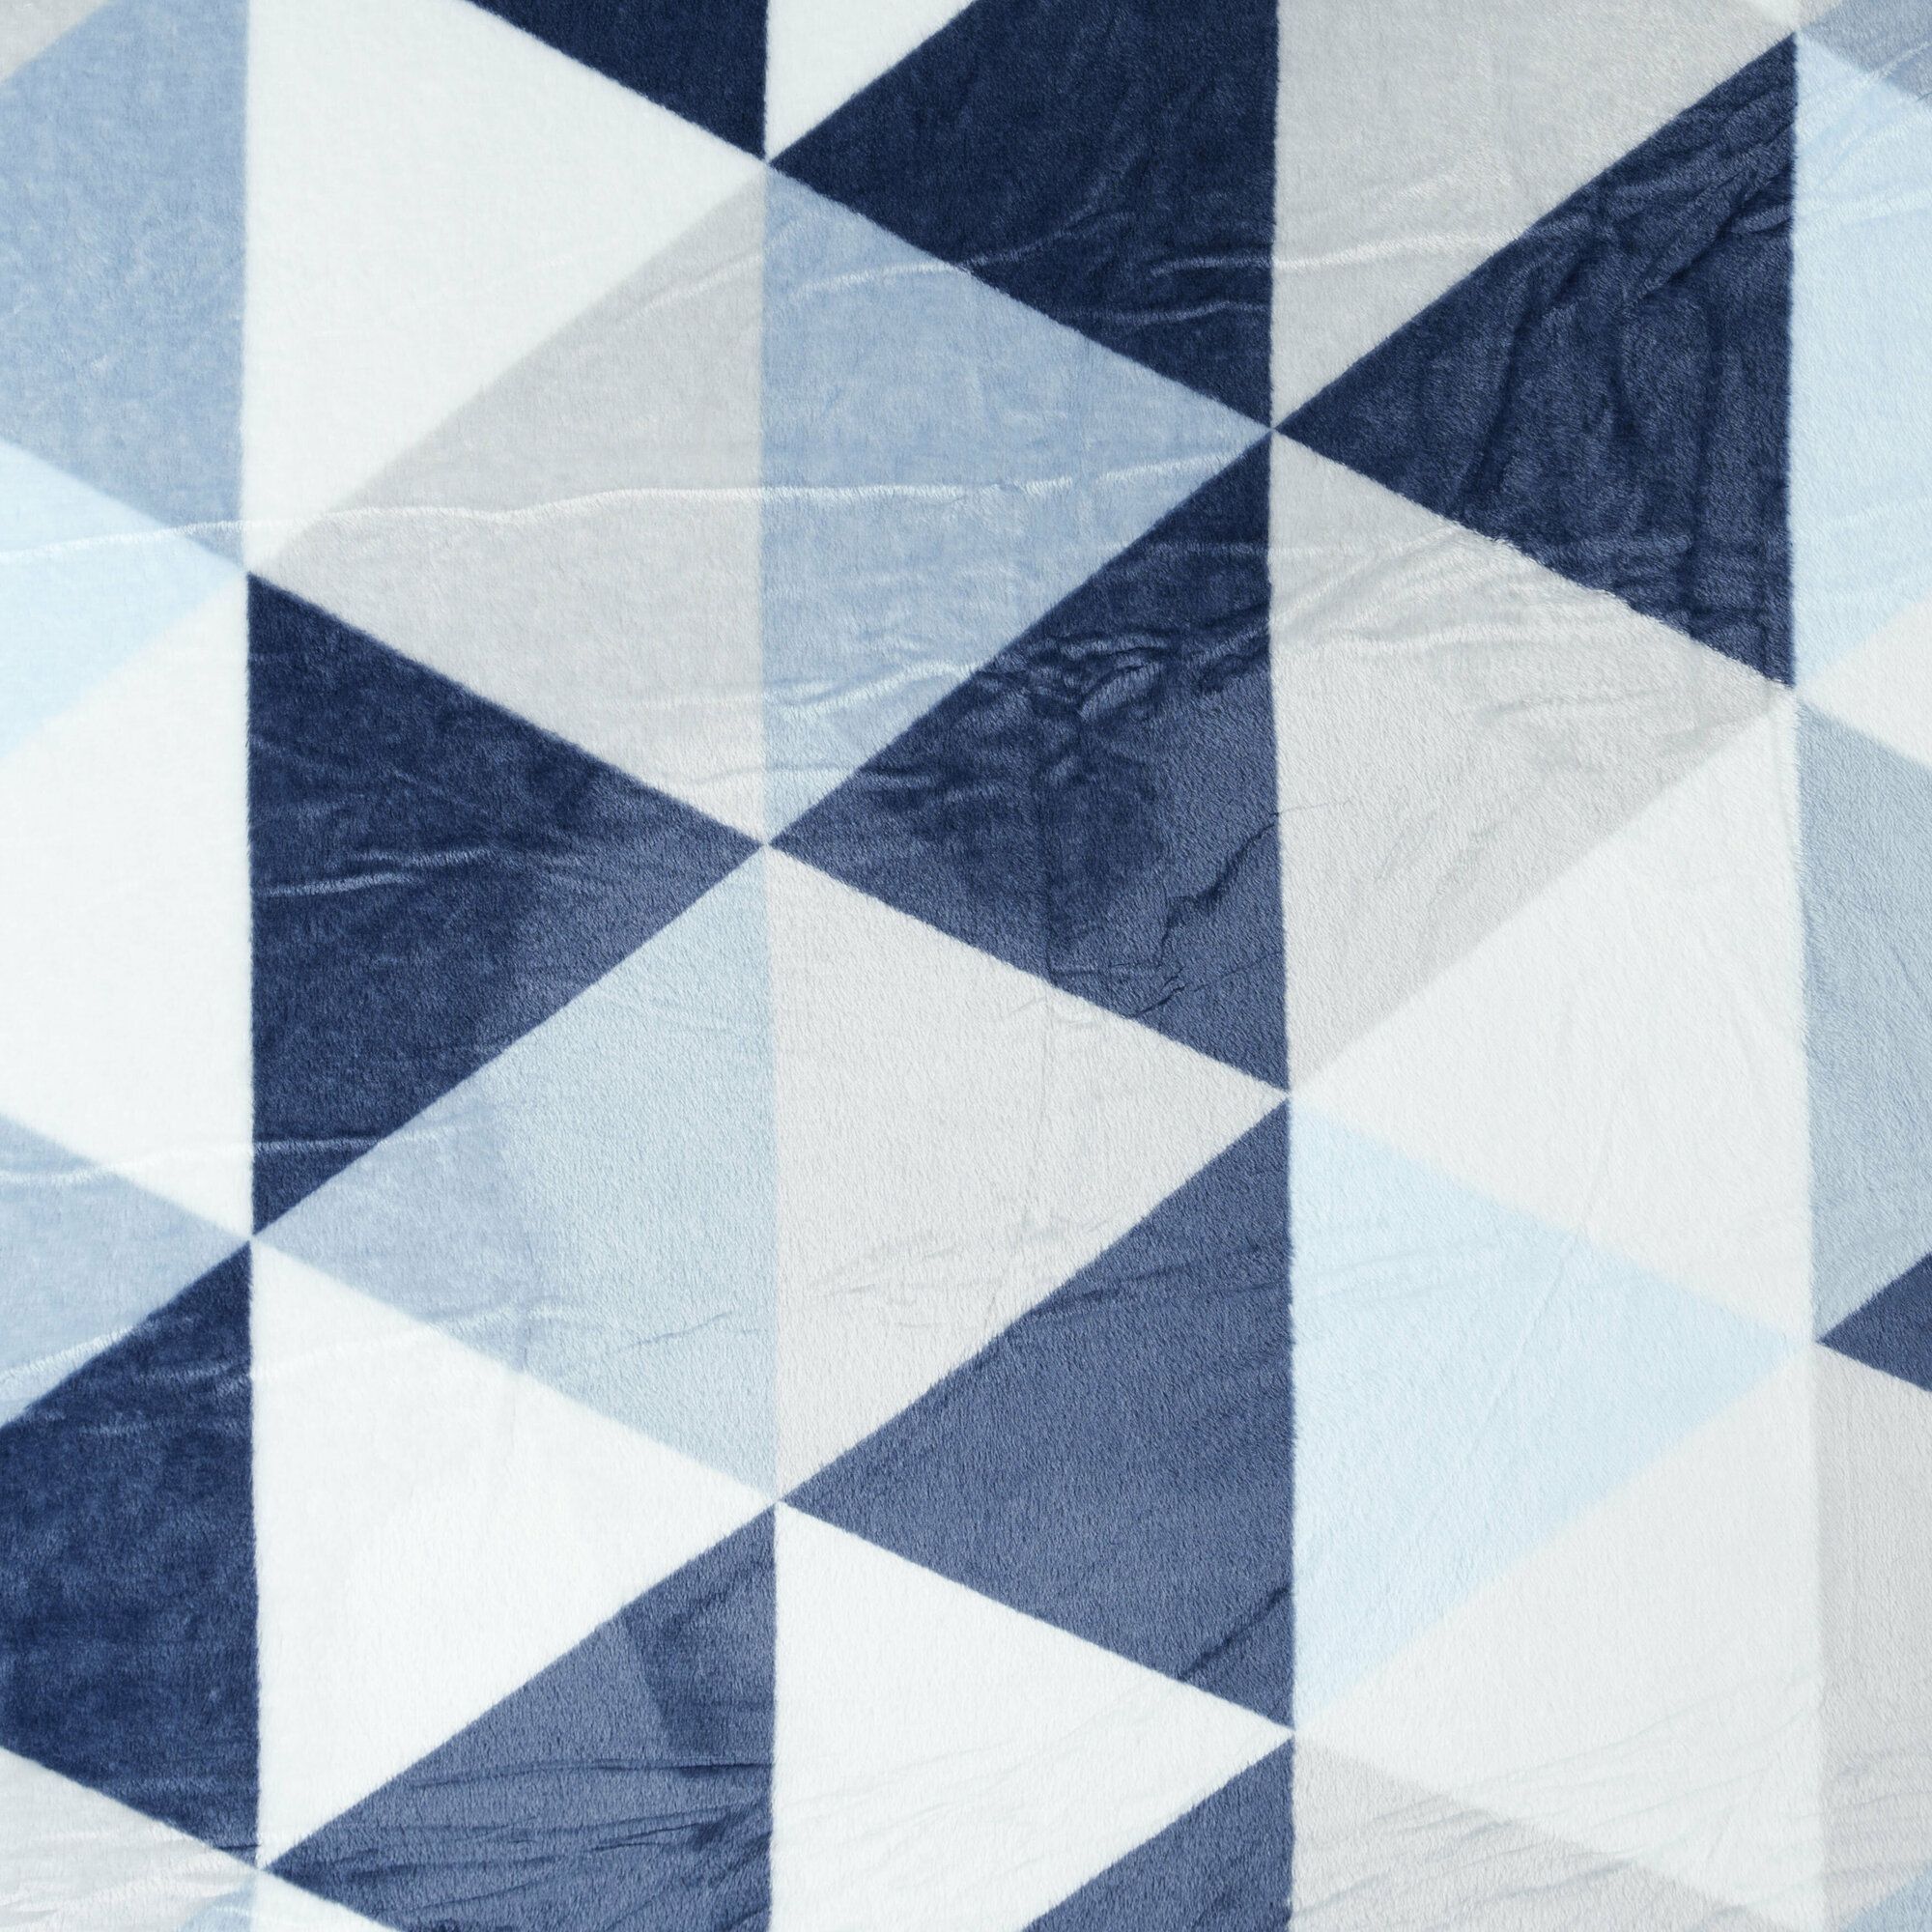 Мягкий плед на большую кровать, 220 х 240 см, серо-синий, геометрический рисунок